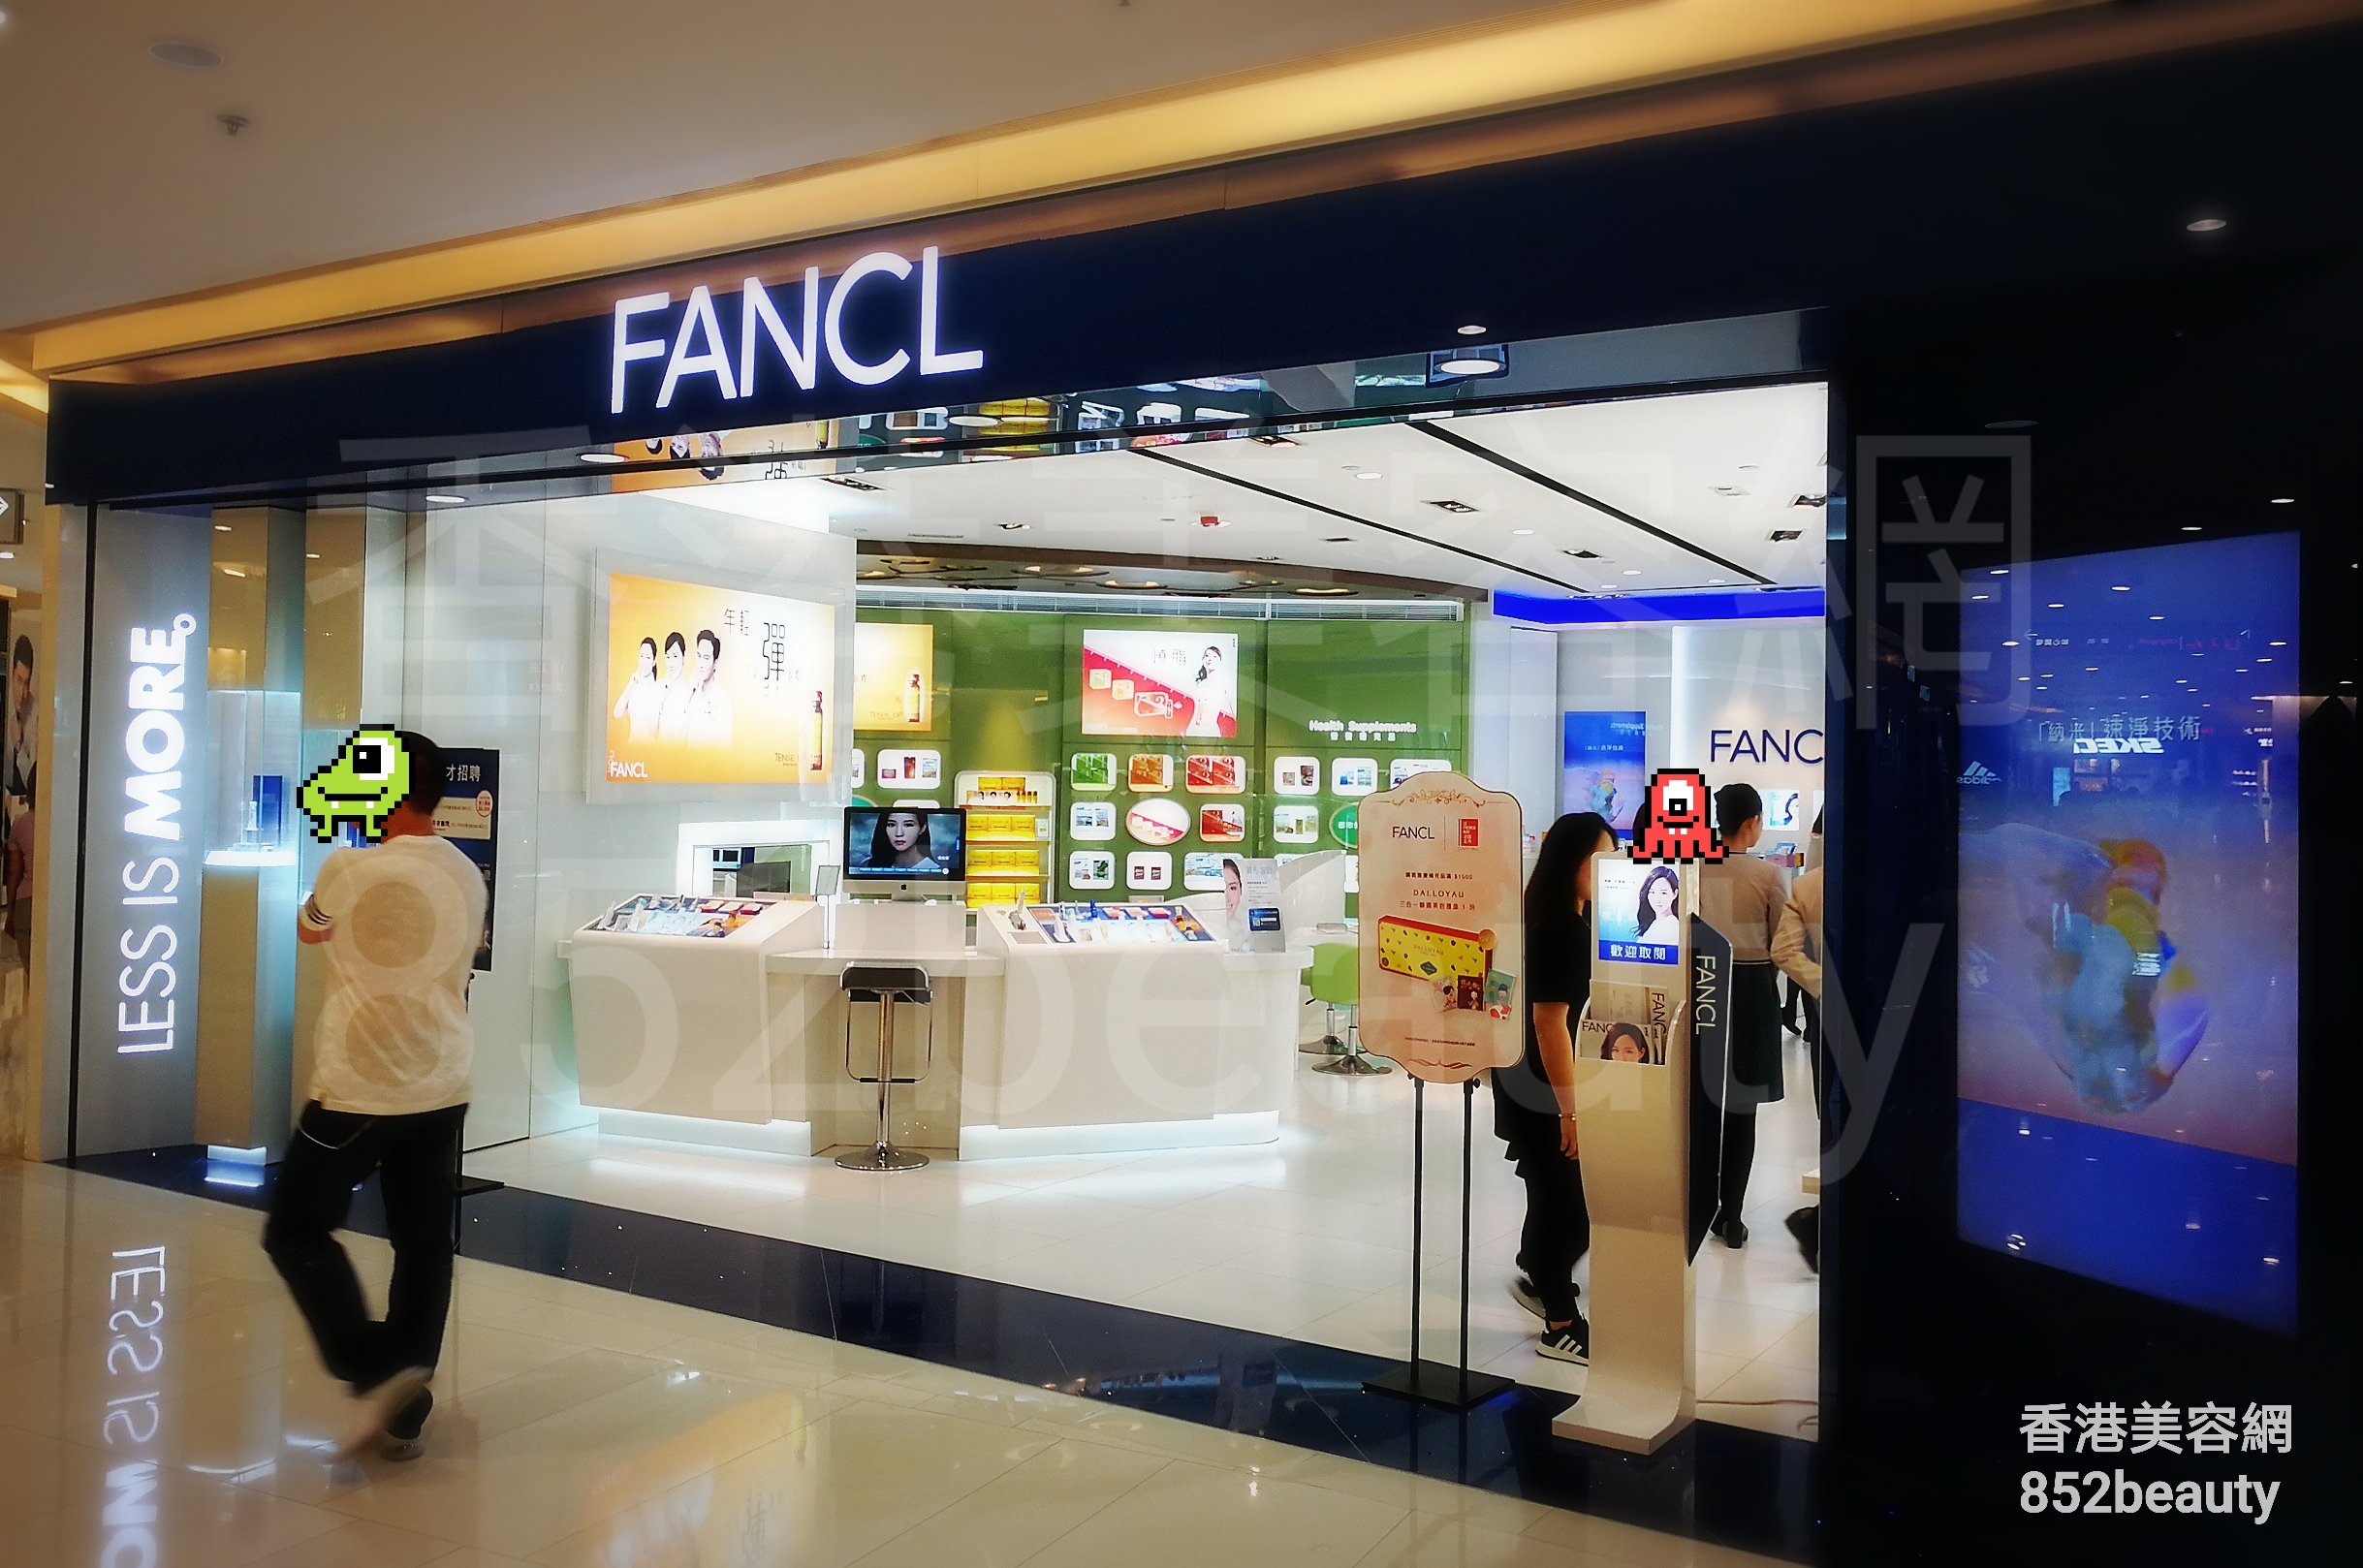 香港美容網 Hong Kong Beauty Salon 美容院 / 美容師: FANCL